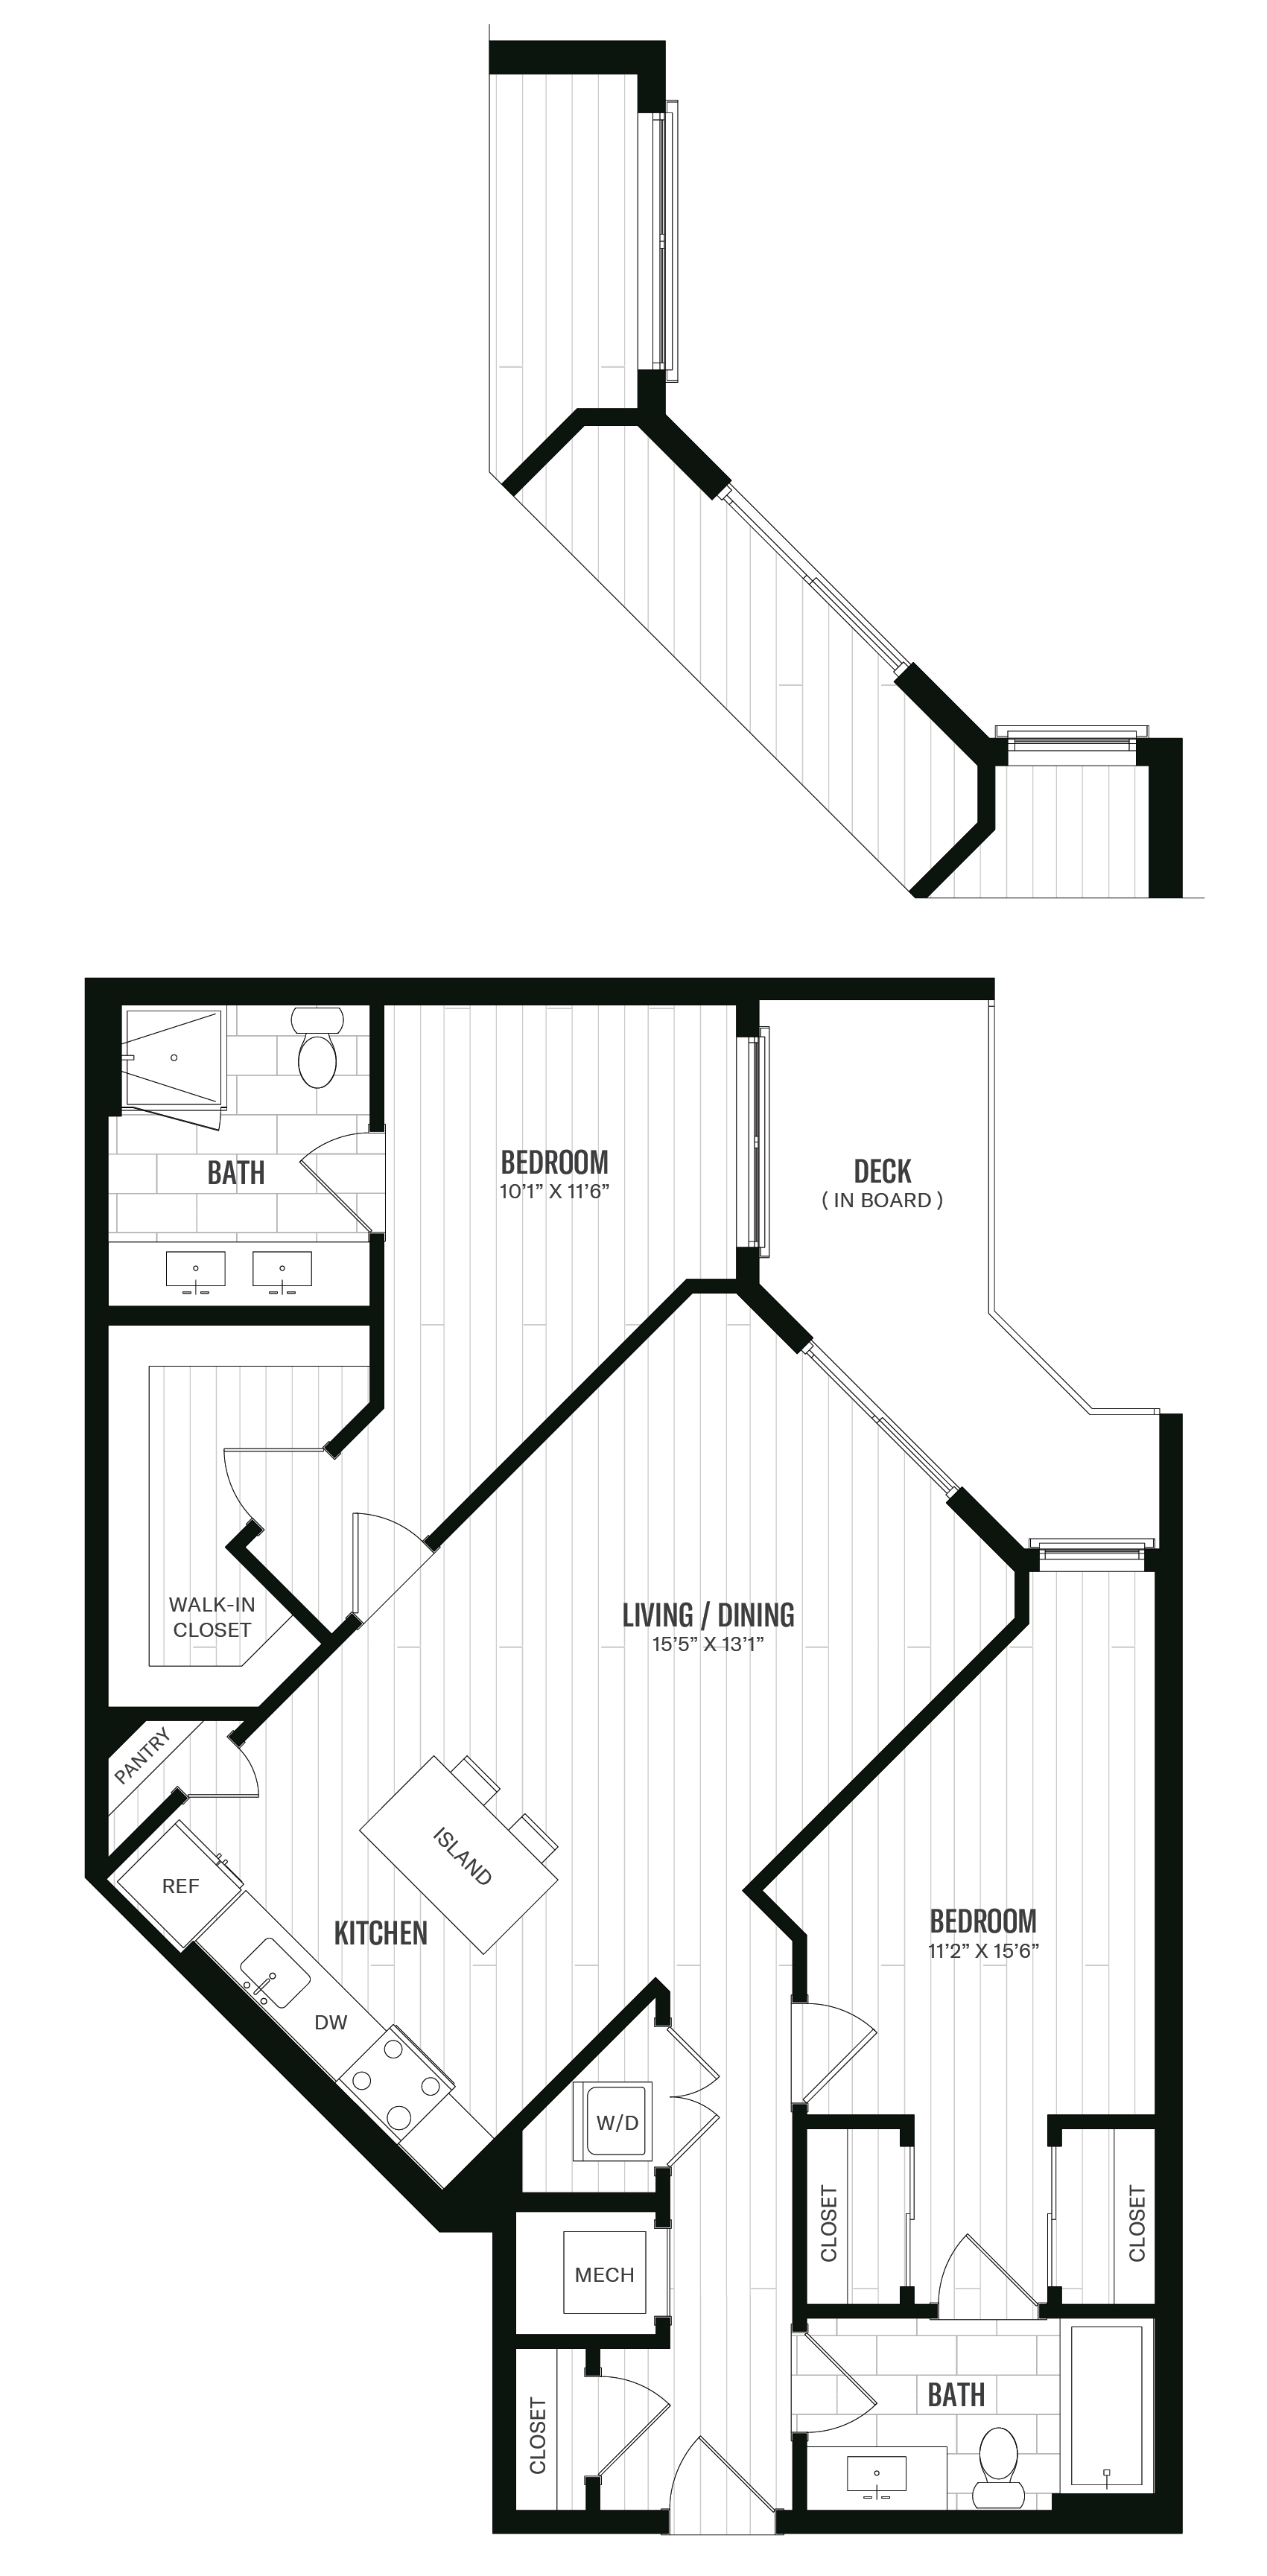 Floorplan image of unit 451